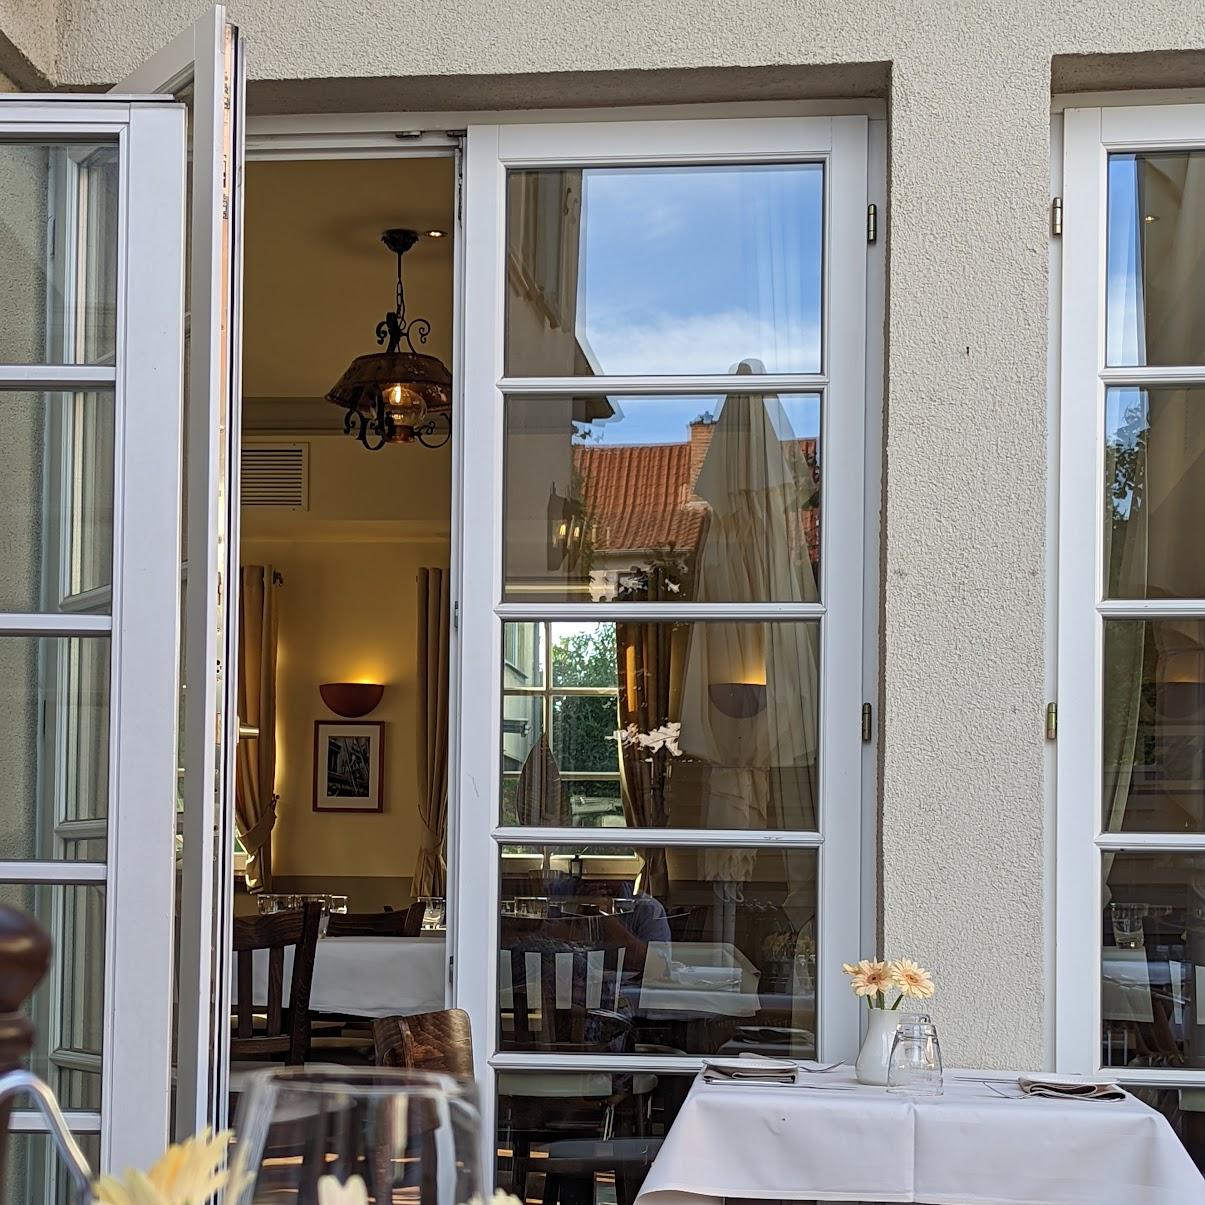 Restaurant "Ristorante Il Pane e Vino" in Schriesheim